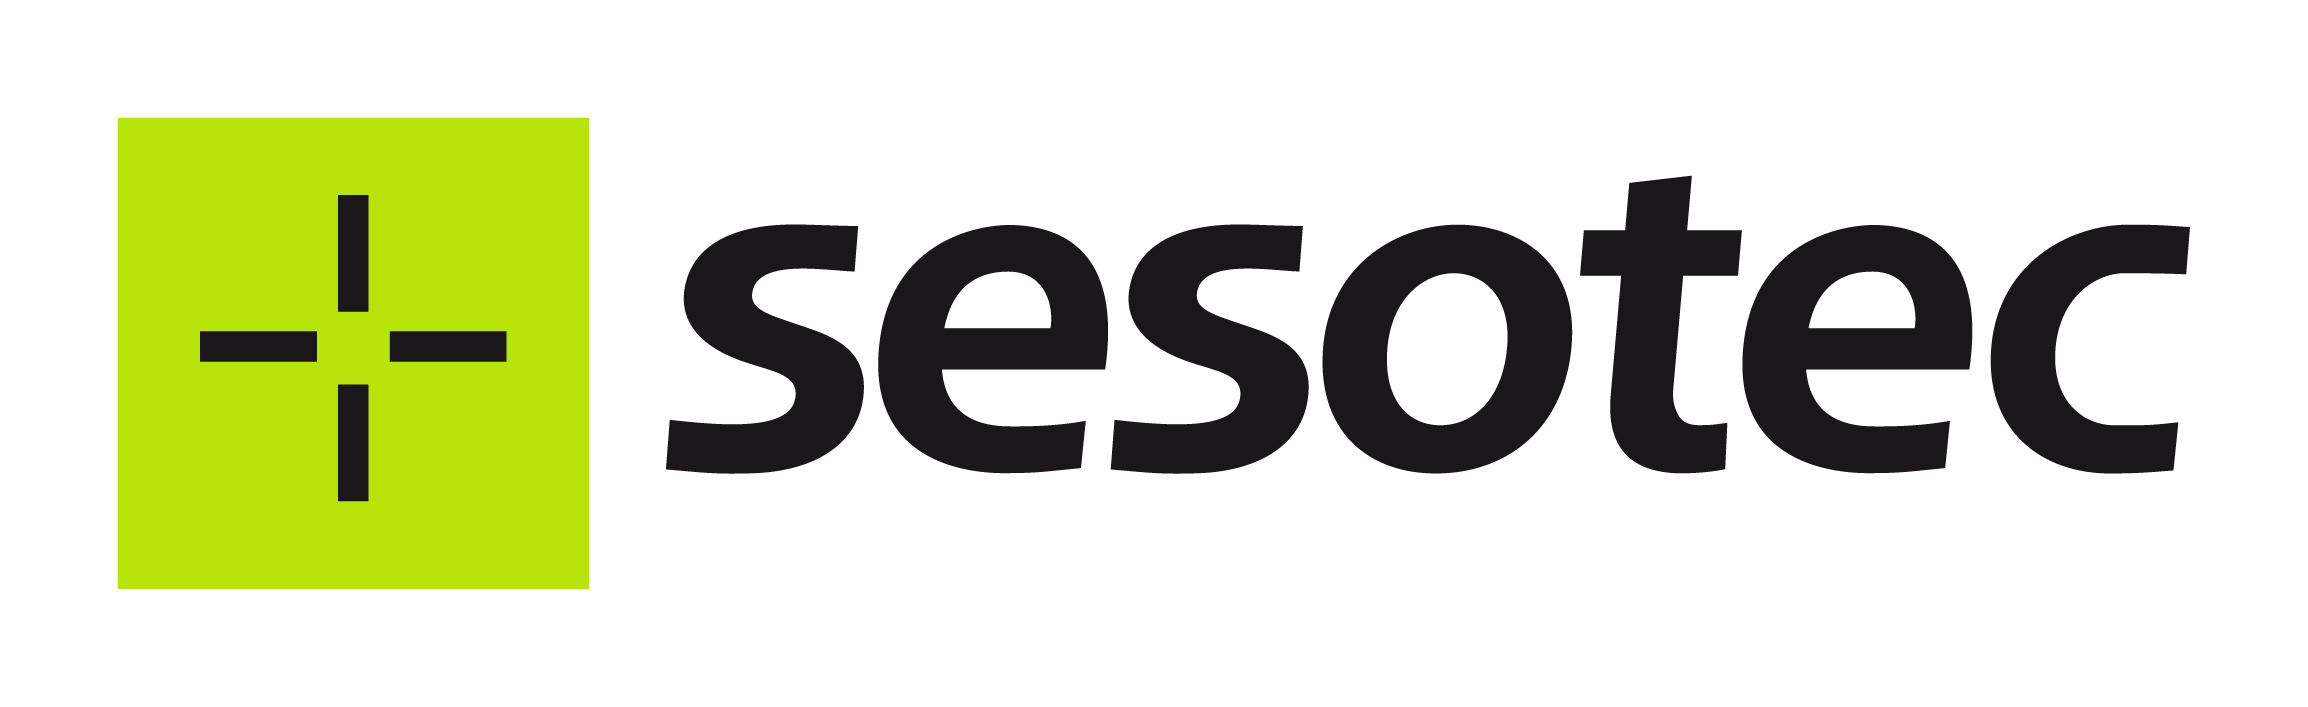 sesotec-logo-web-zone